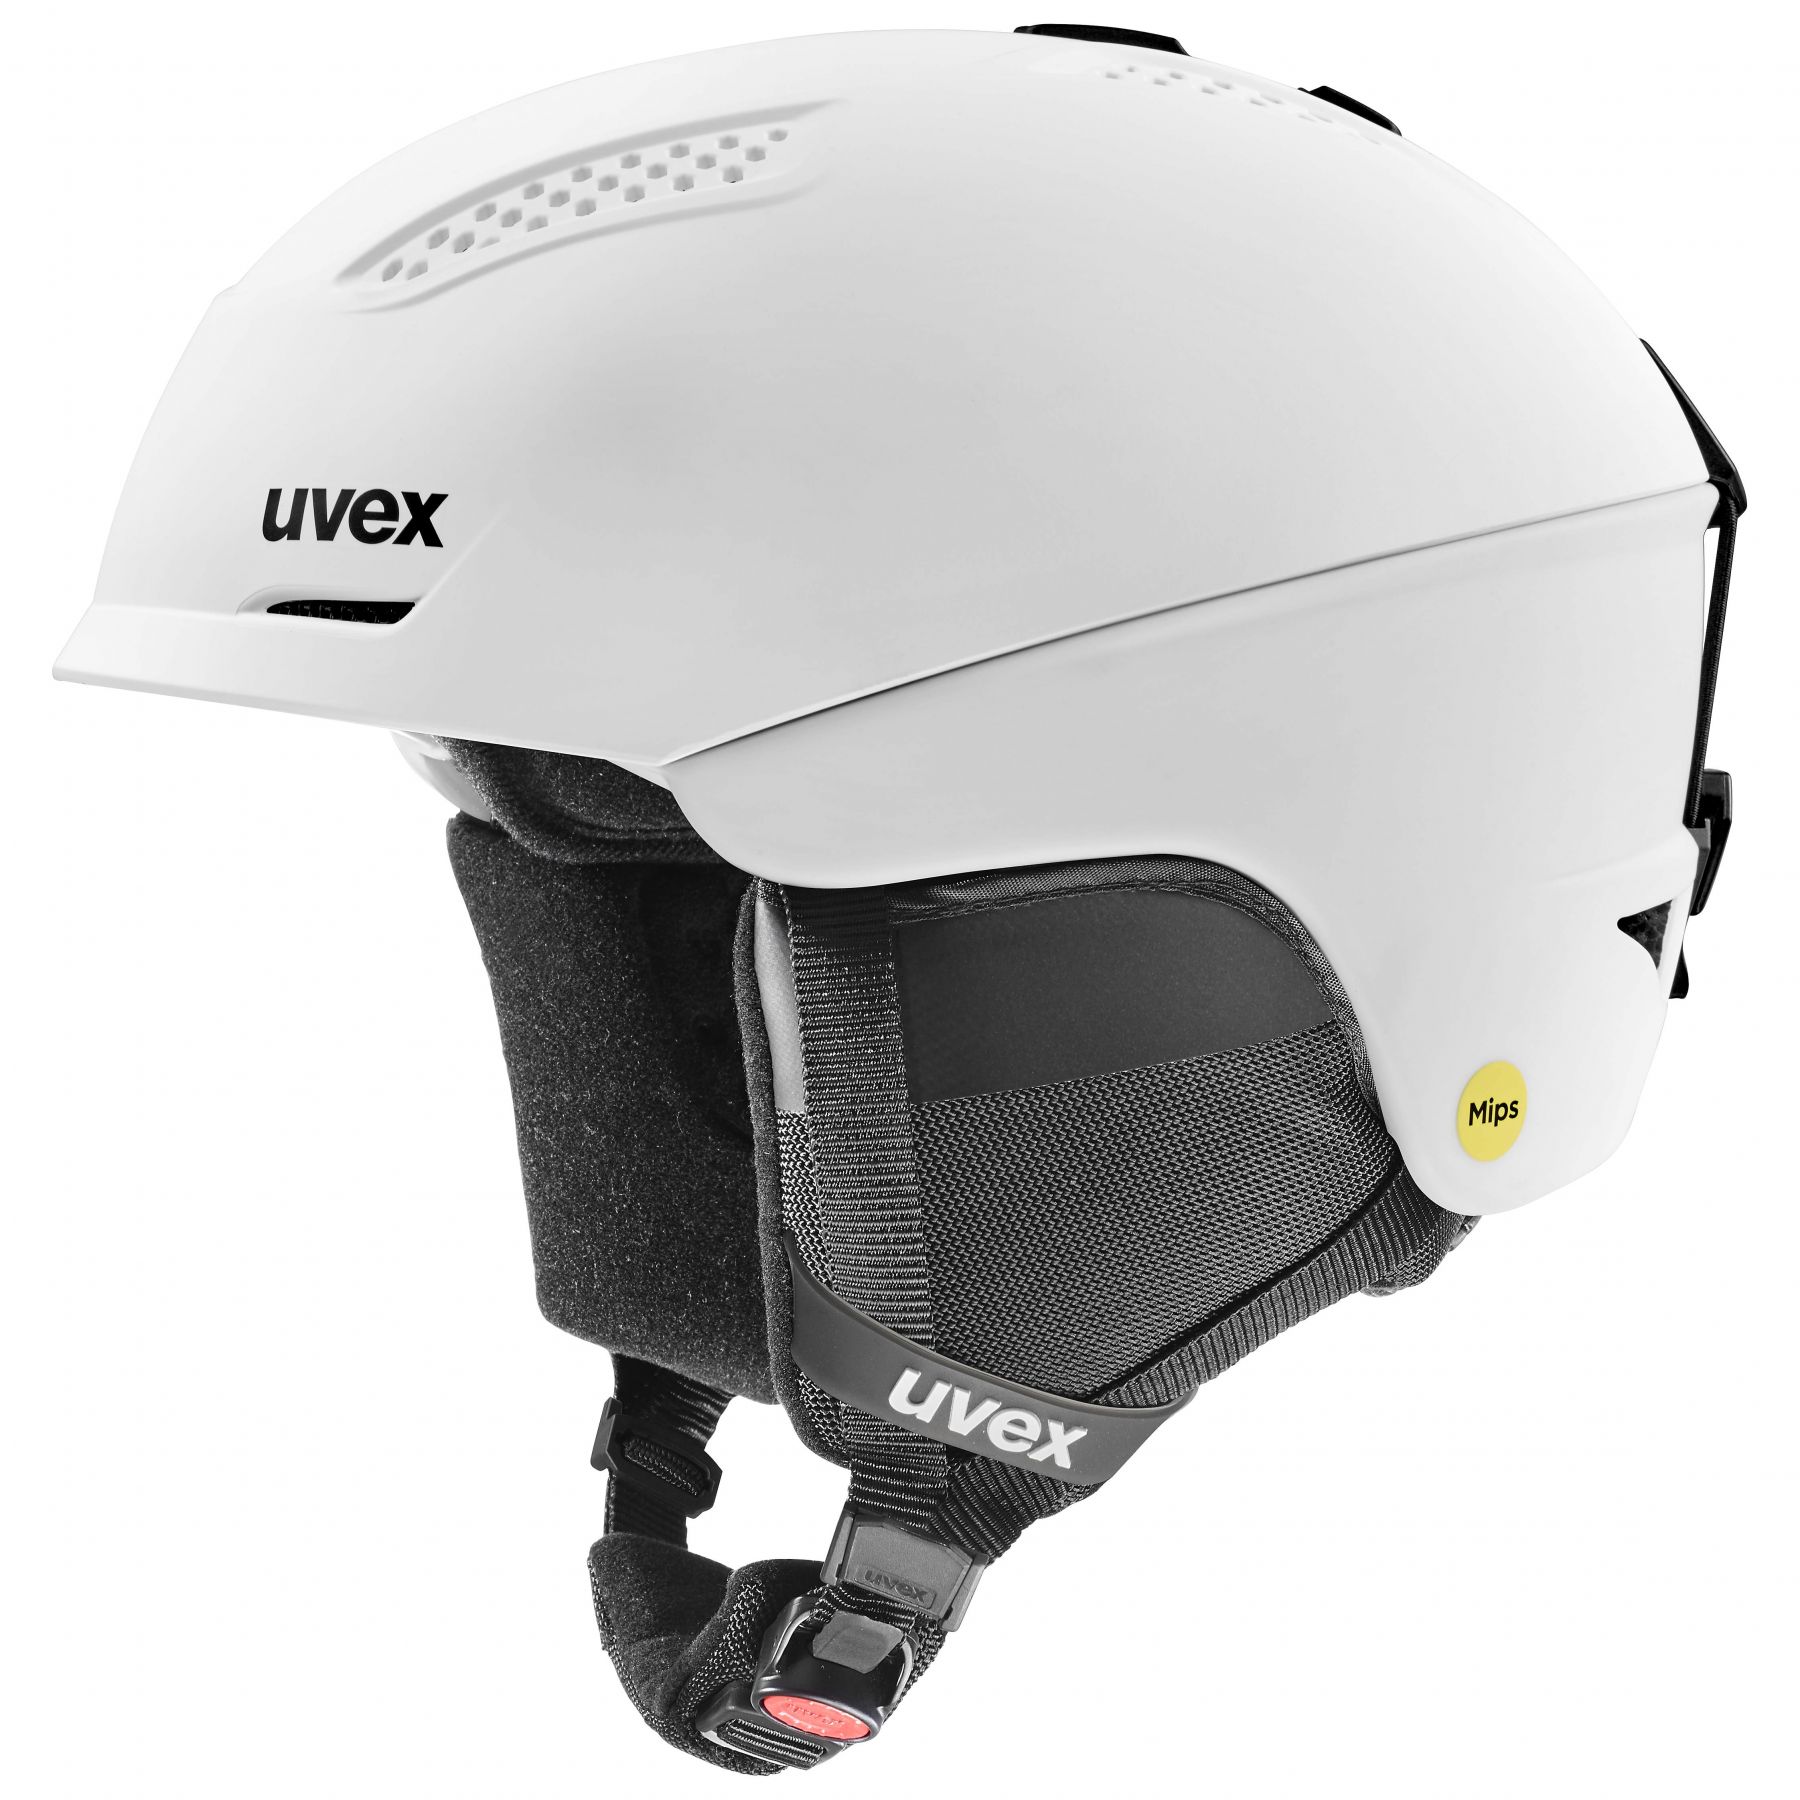 Billede af Uvex Ultra MIPS, skihjelm, hvid hos Skisport.dk